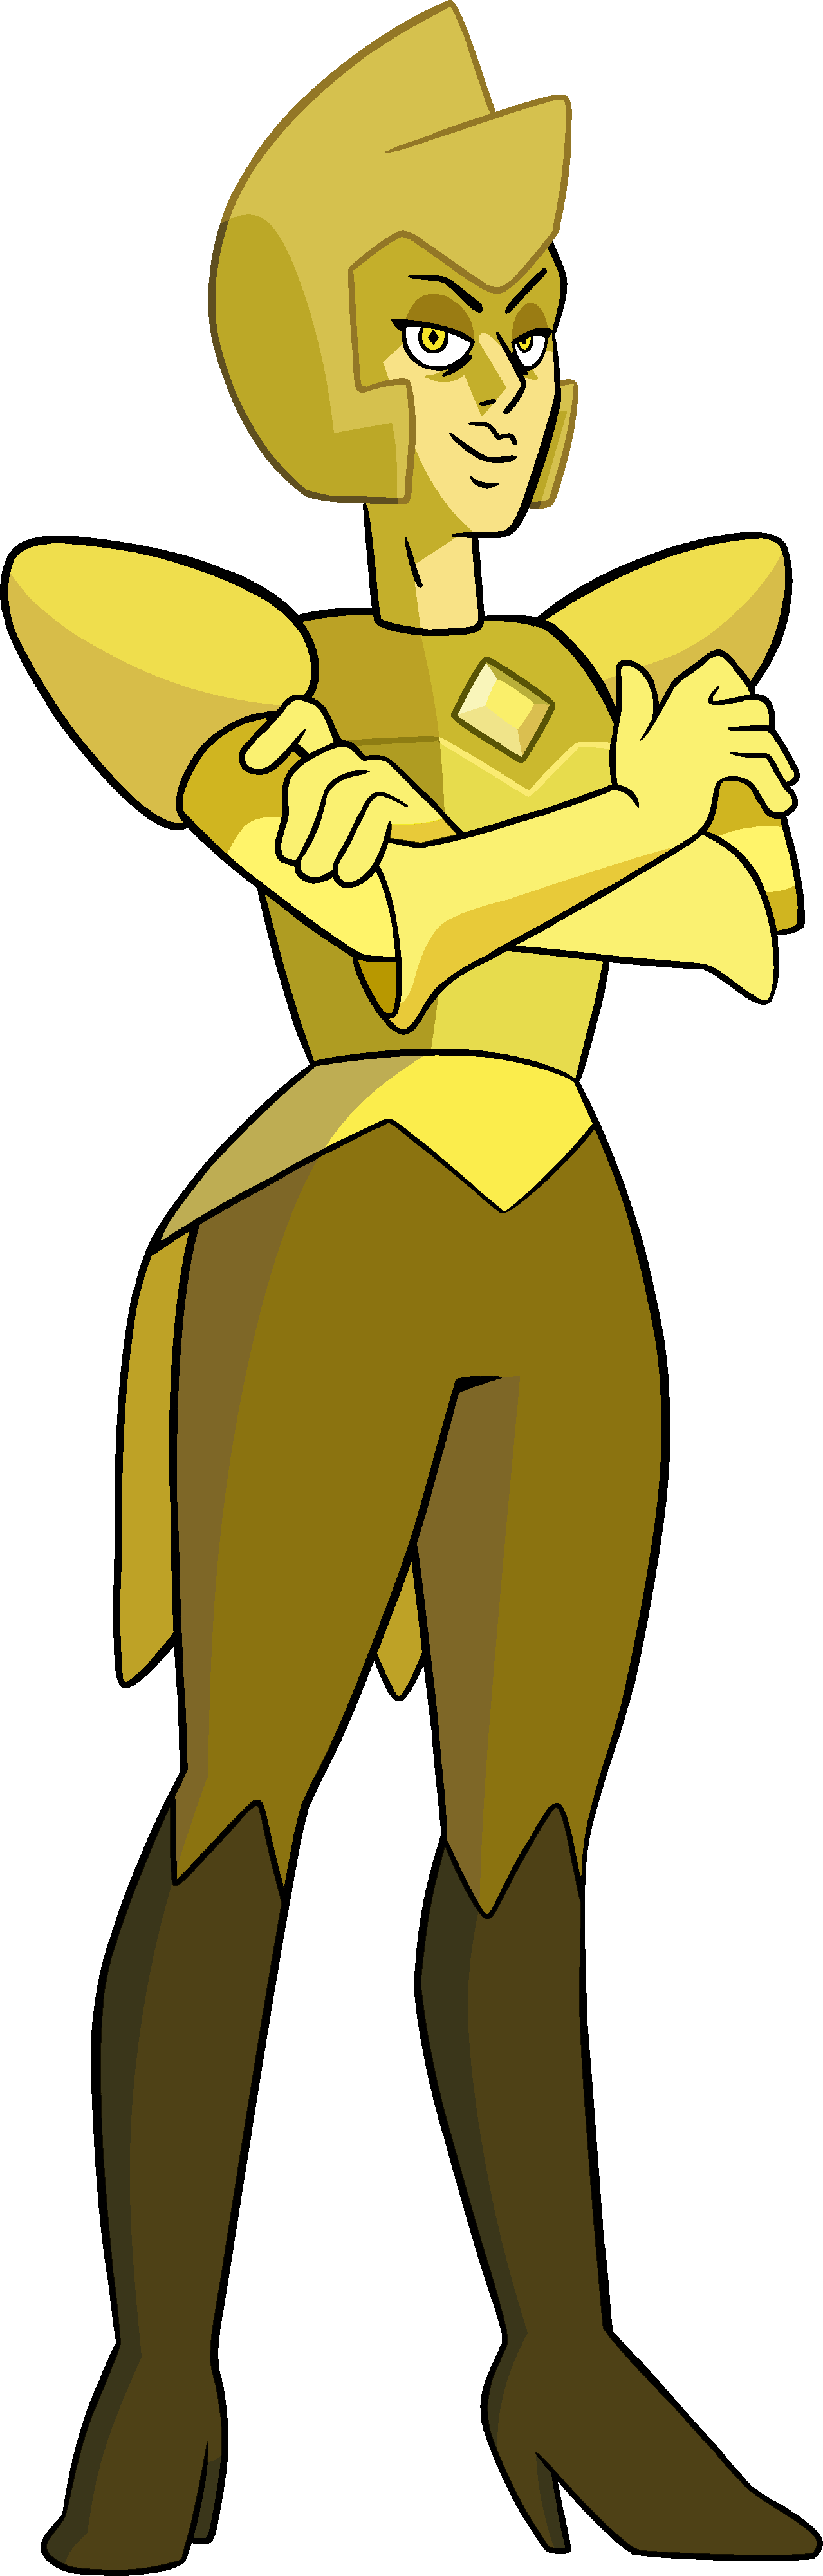 Yellow Diamond Steven Universe Wiki Fandom - diamond corruption steven universe song id roblox